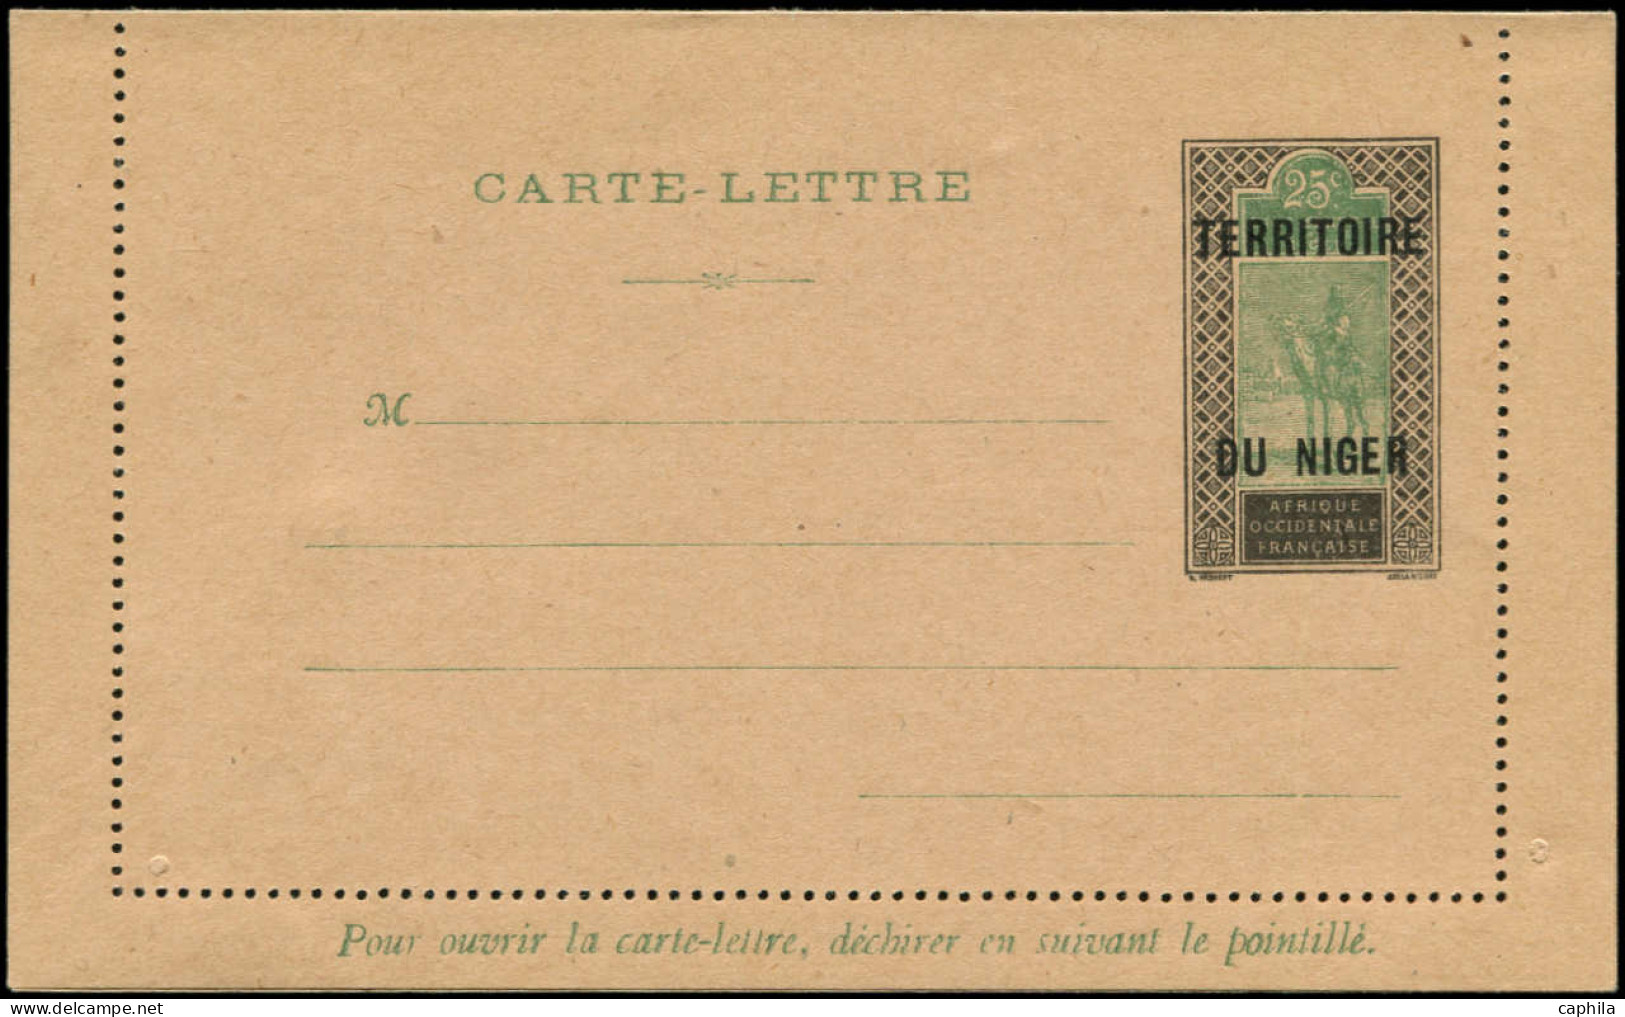 NIGER Entiers Postaux N - CL1a, Carte Lettre Sur Chamois Clair: 25c. Noir Et Vert - Cote: 120 - Unused Stamps